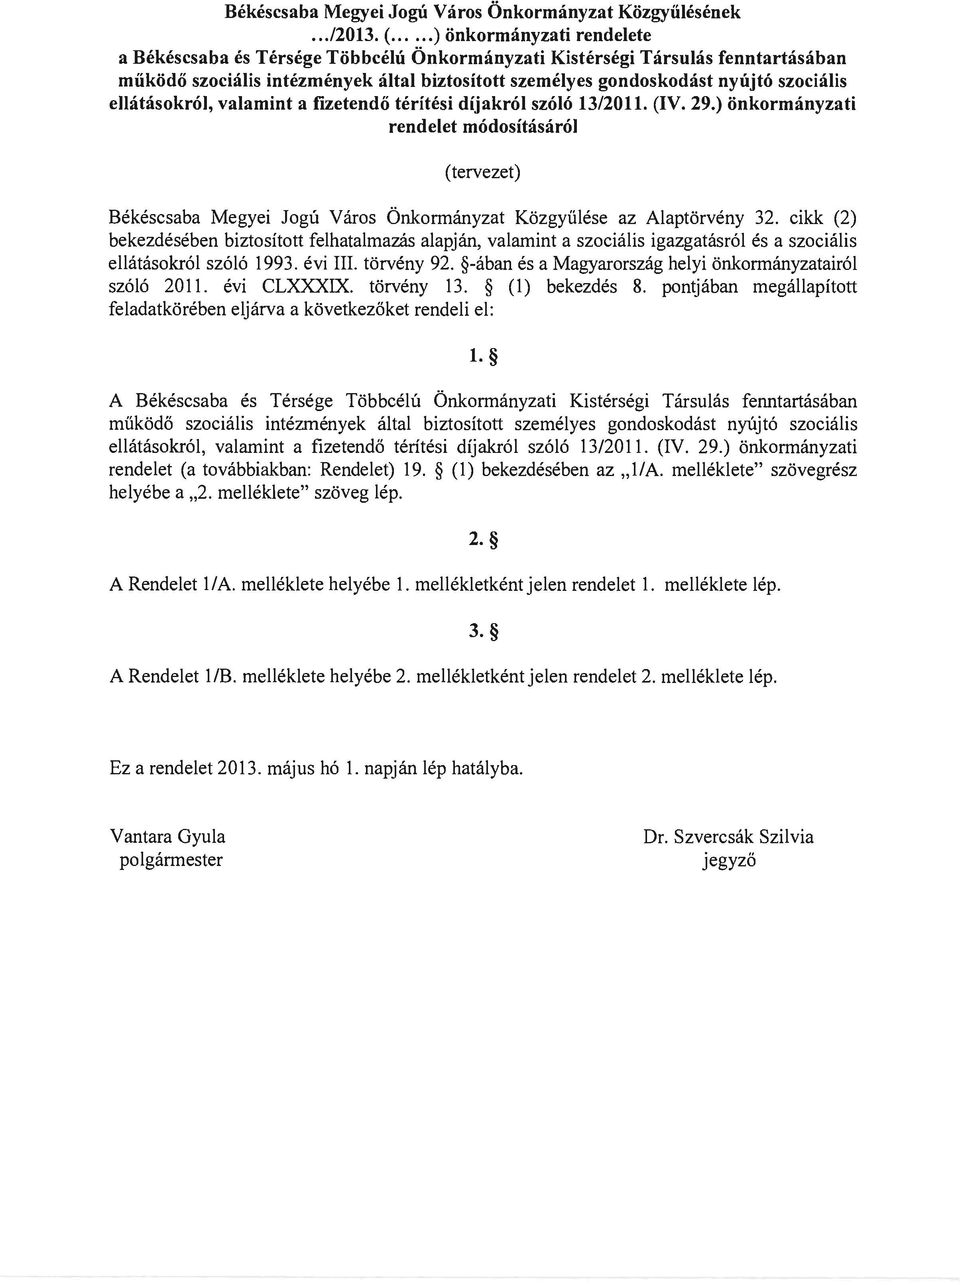 ellátásokról, valamint a f"lzetendő térítési díjakról szóló 13/2011. (IV. 29.) önkormányzati rendelet módosításáról (tervezet) Békéscsaba Megyei Jogú Város Önkormányzat Közgyűlése az Alaptörvény 32.